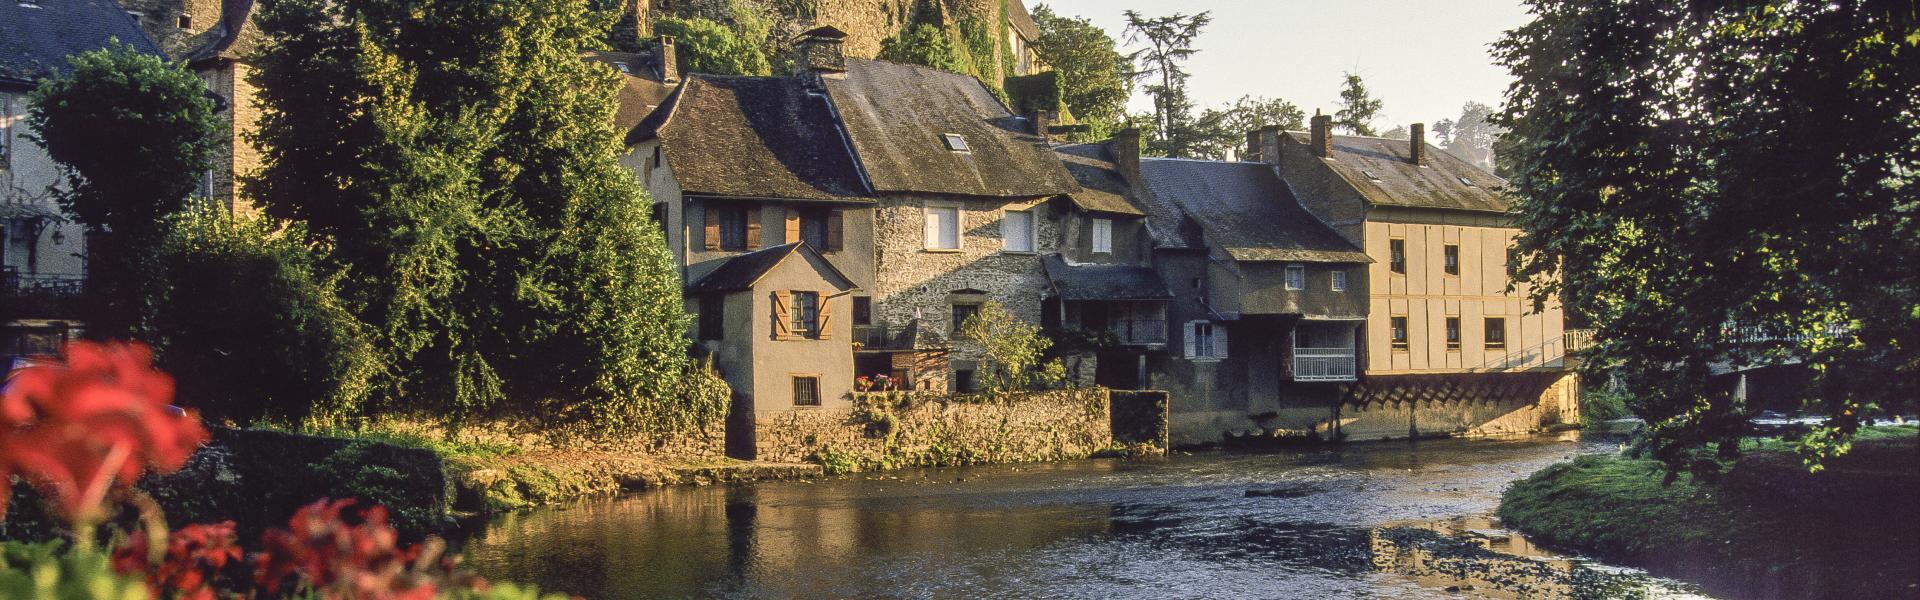 Location de vacances à Malemort-sur-Corrèze - Corrèze - amivac